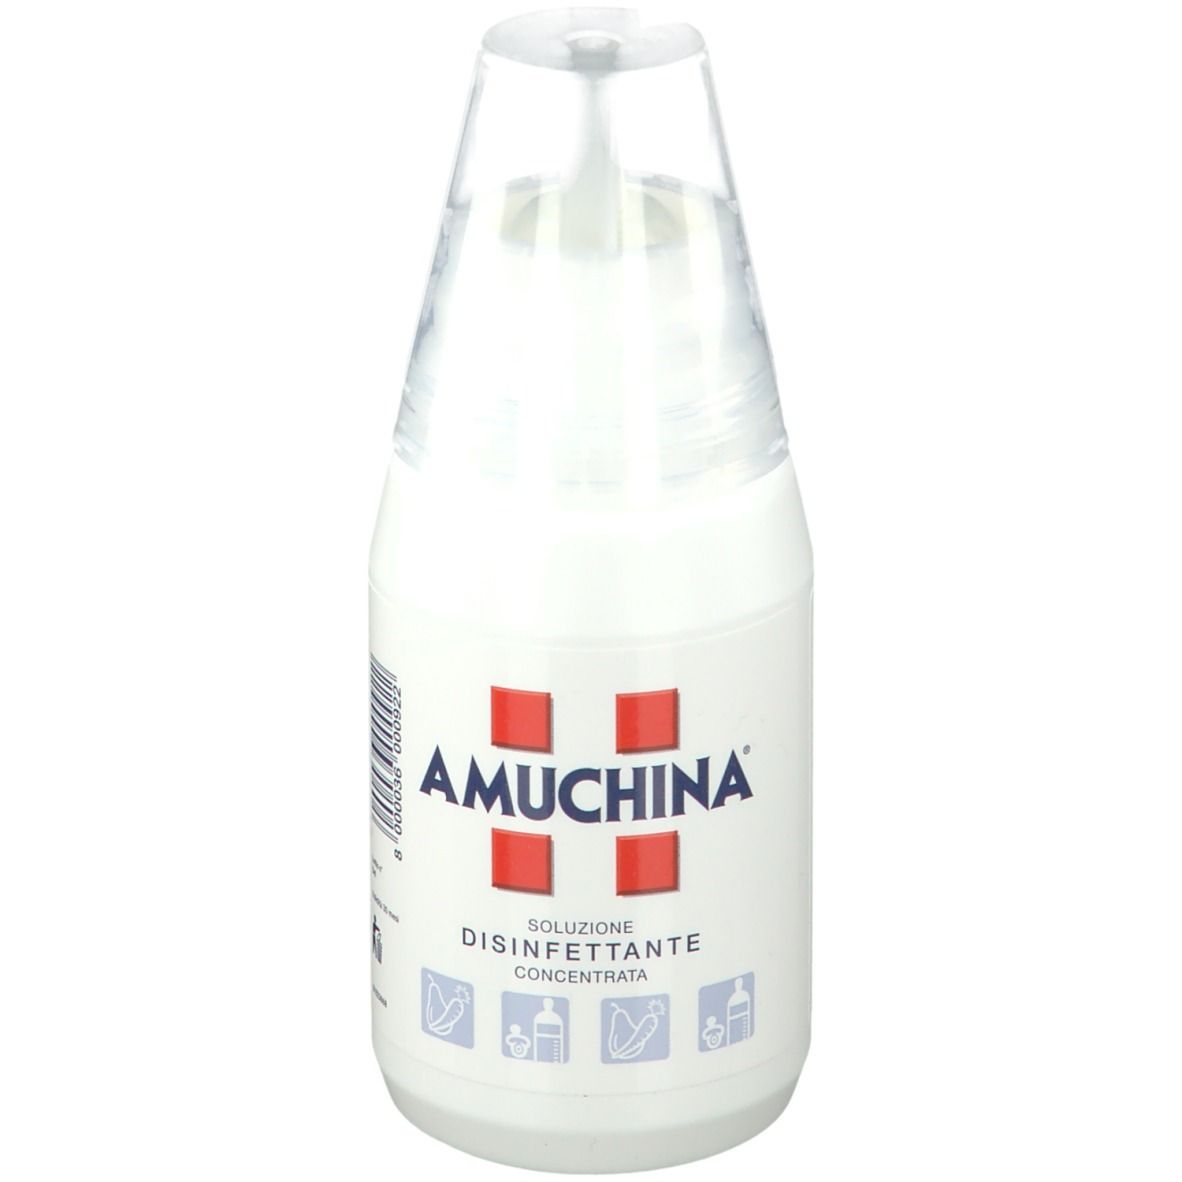 Image of Amuchina Soluzione Disinfettante Concentrata 250 ml